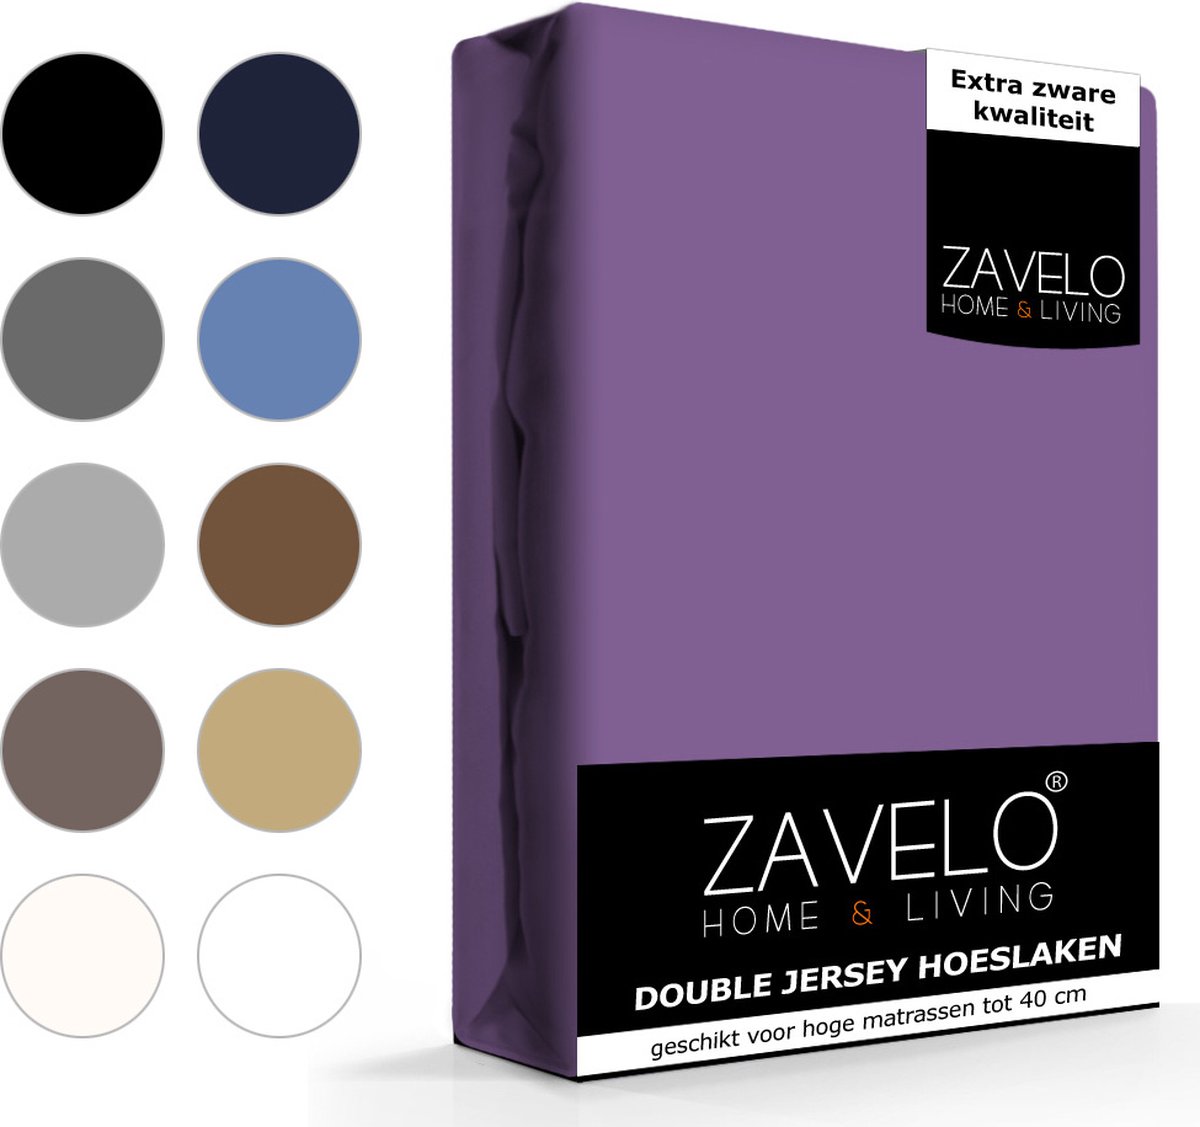 Slaaptextiel Zavelo Double Jersey Hoeslaken-1-persoons (90x220 Cm) - Paars